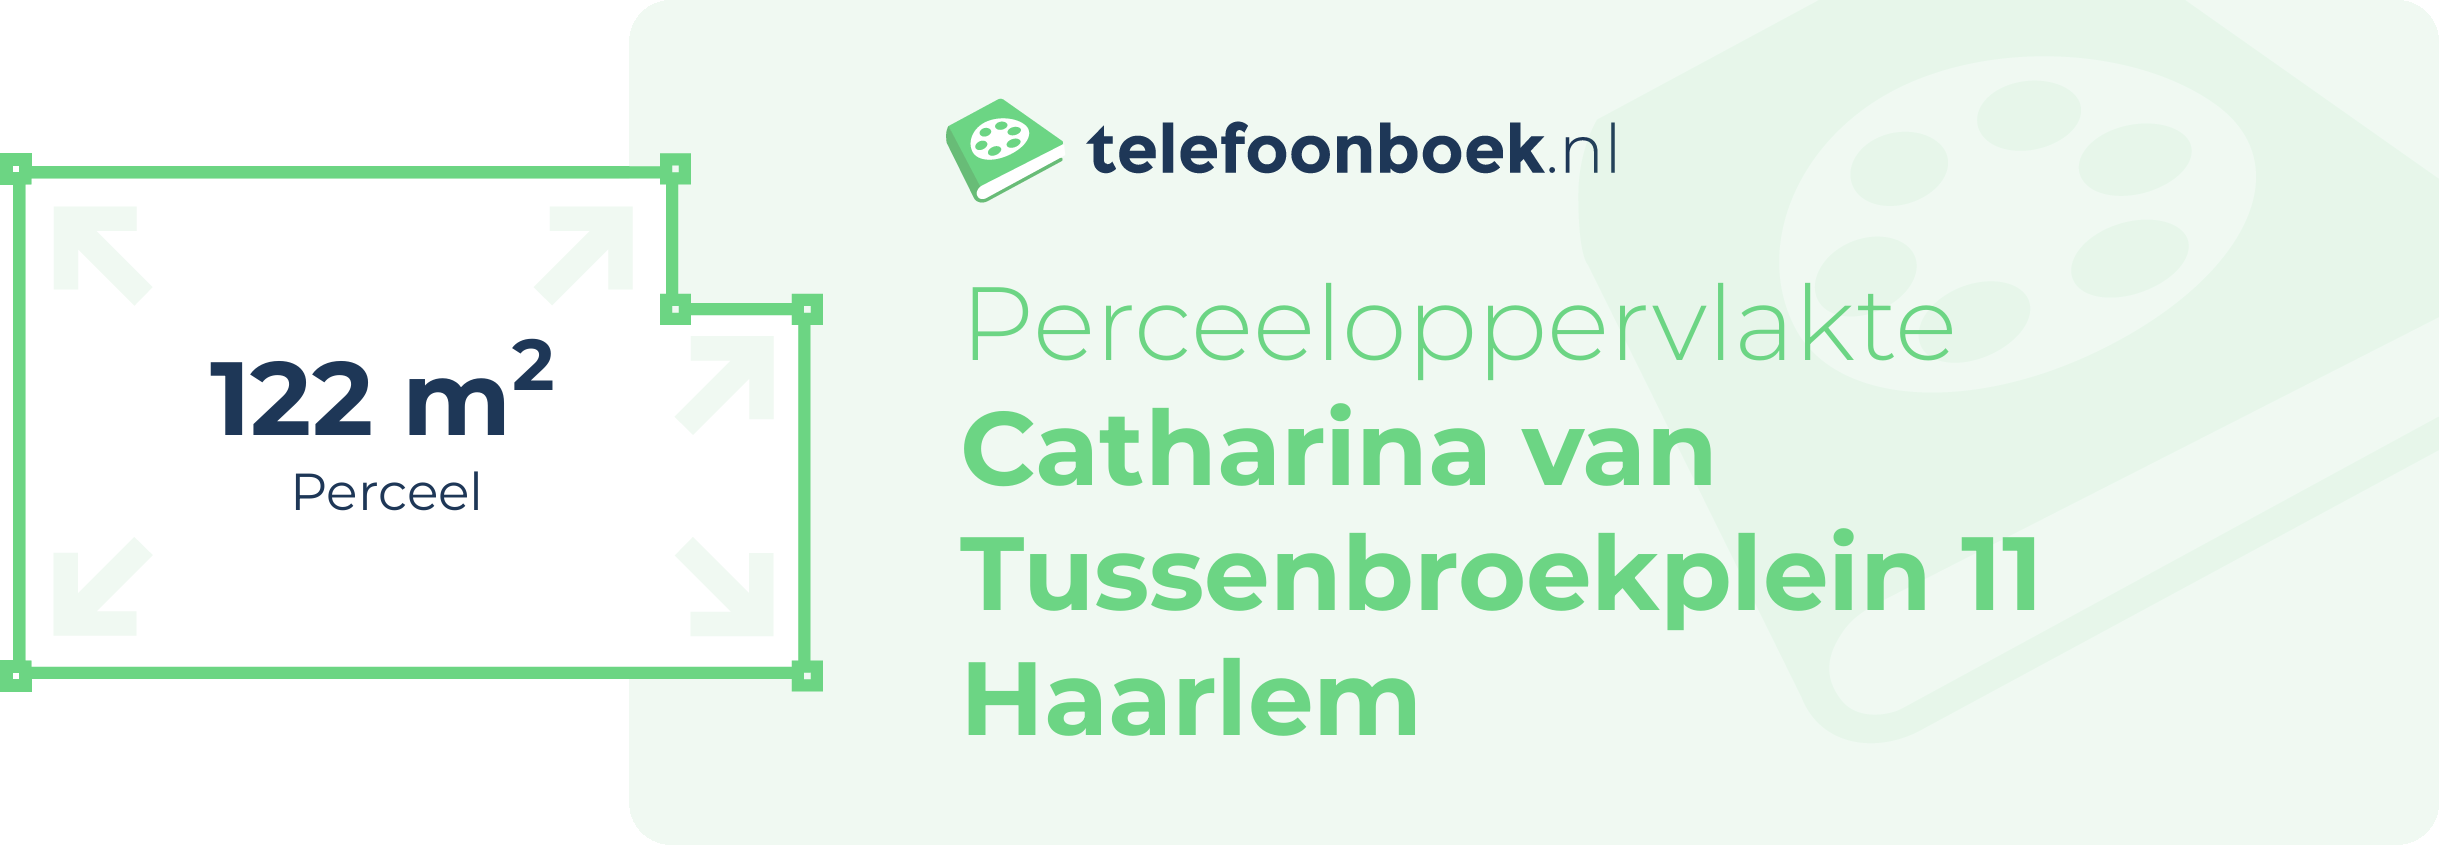 Perceeloppervlakte Catharina Van Tussenbroekplein 11 Haarlem